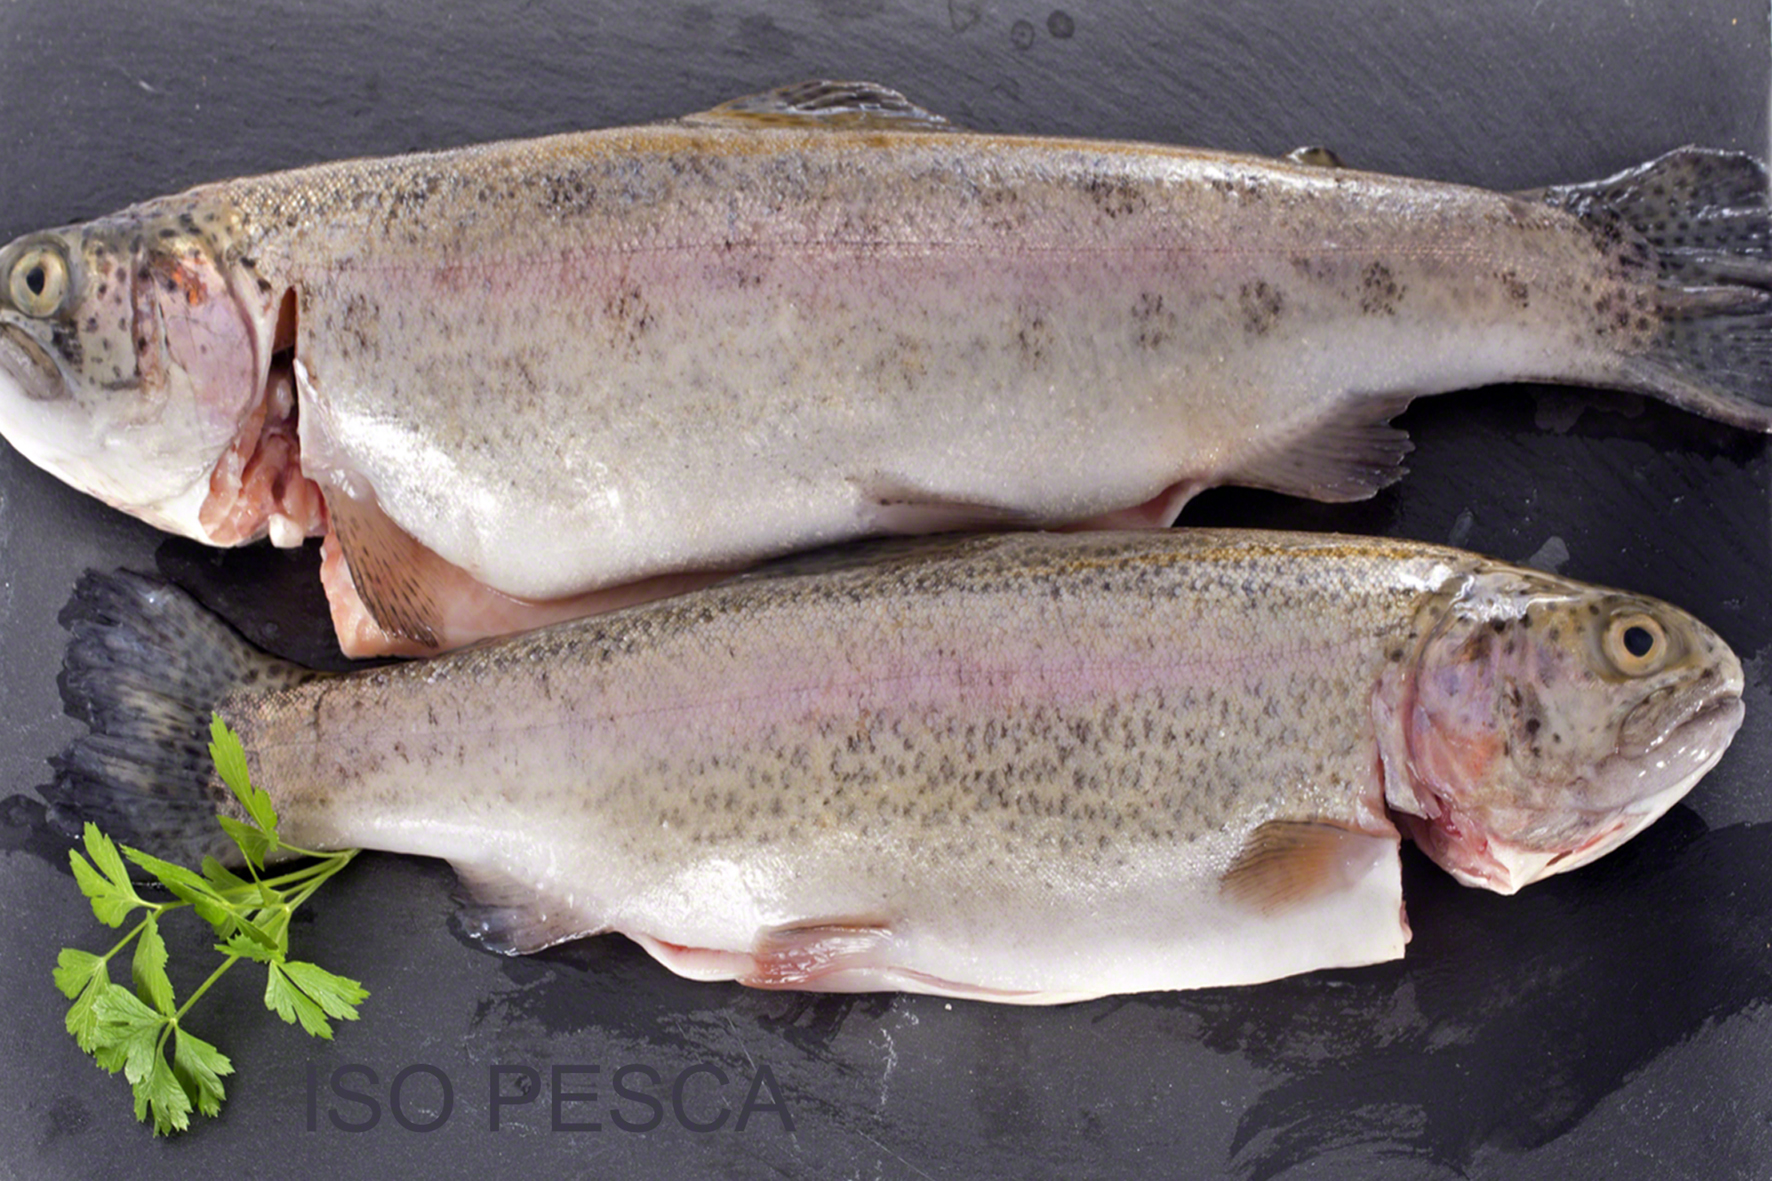 Truite vente en gros - Grossiste poissons pour poissonneries Horeca Restaurant - Iso Pesca Bruxelles Abattoir d Anderlecht Bruxelles Belgique